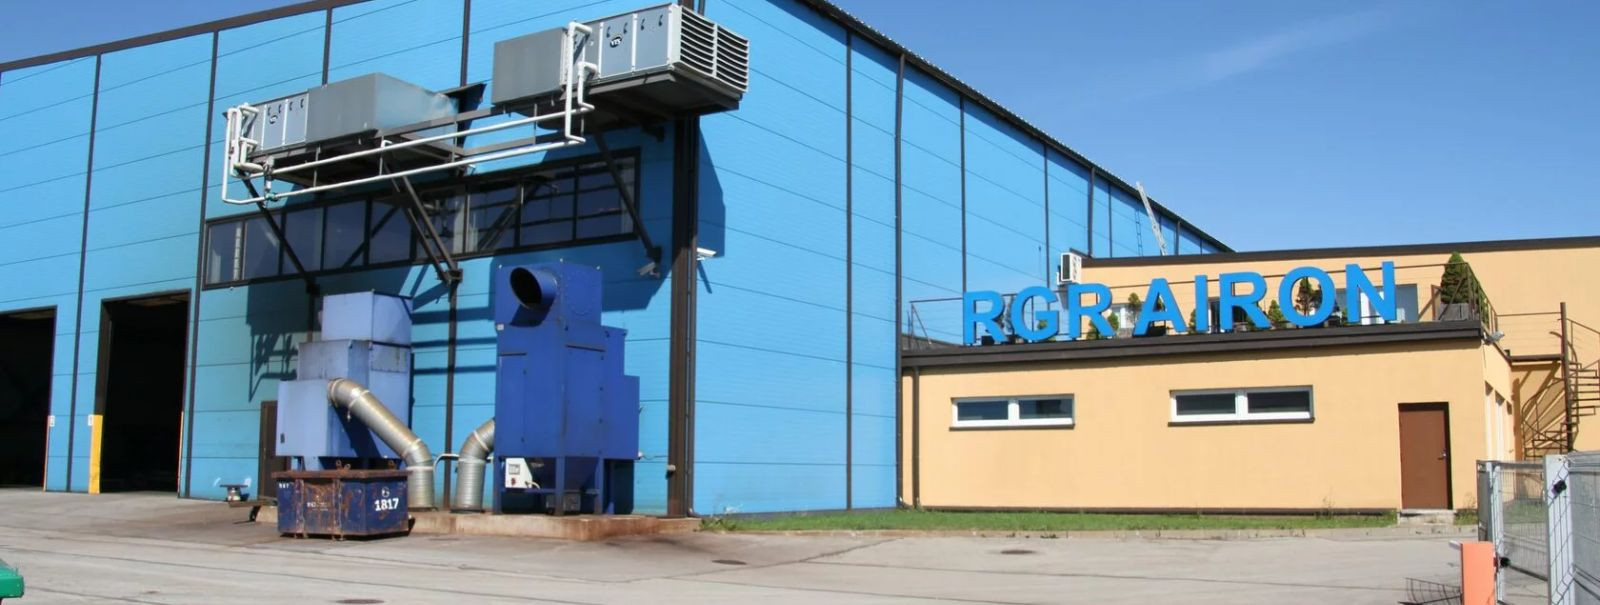 Sissejuhatus  RGR Metall OÜ on asutatud 1998. aastal ning on Eesti kapitalil põhinev ettevõte. Põhitegevuseks on musta ja roostevaba metalltoodete kaubandus.  E